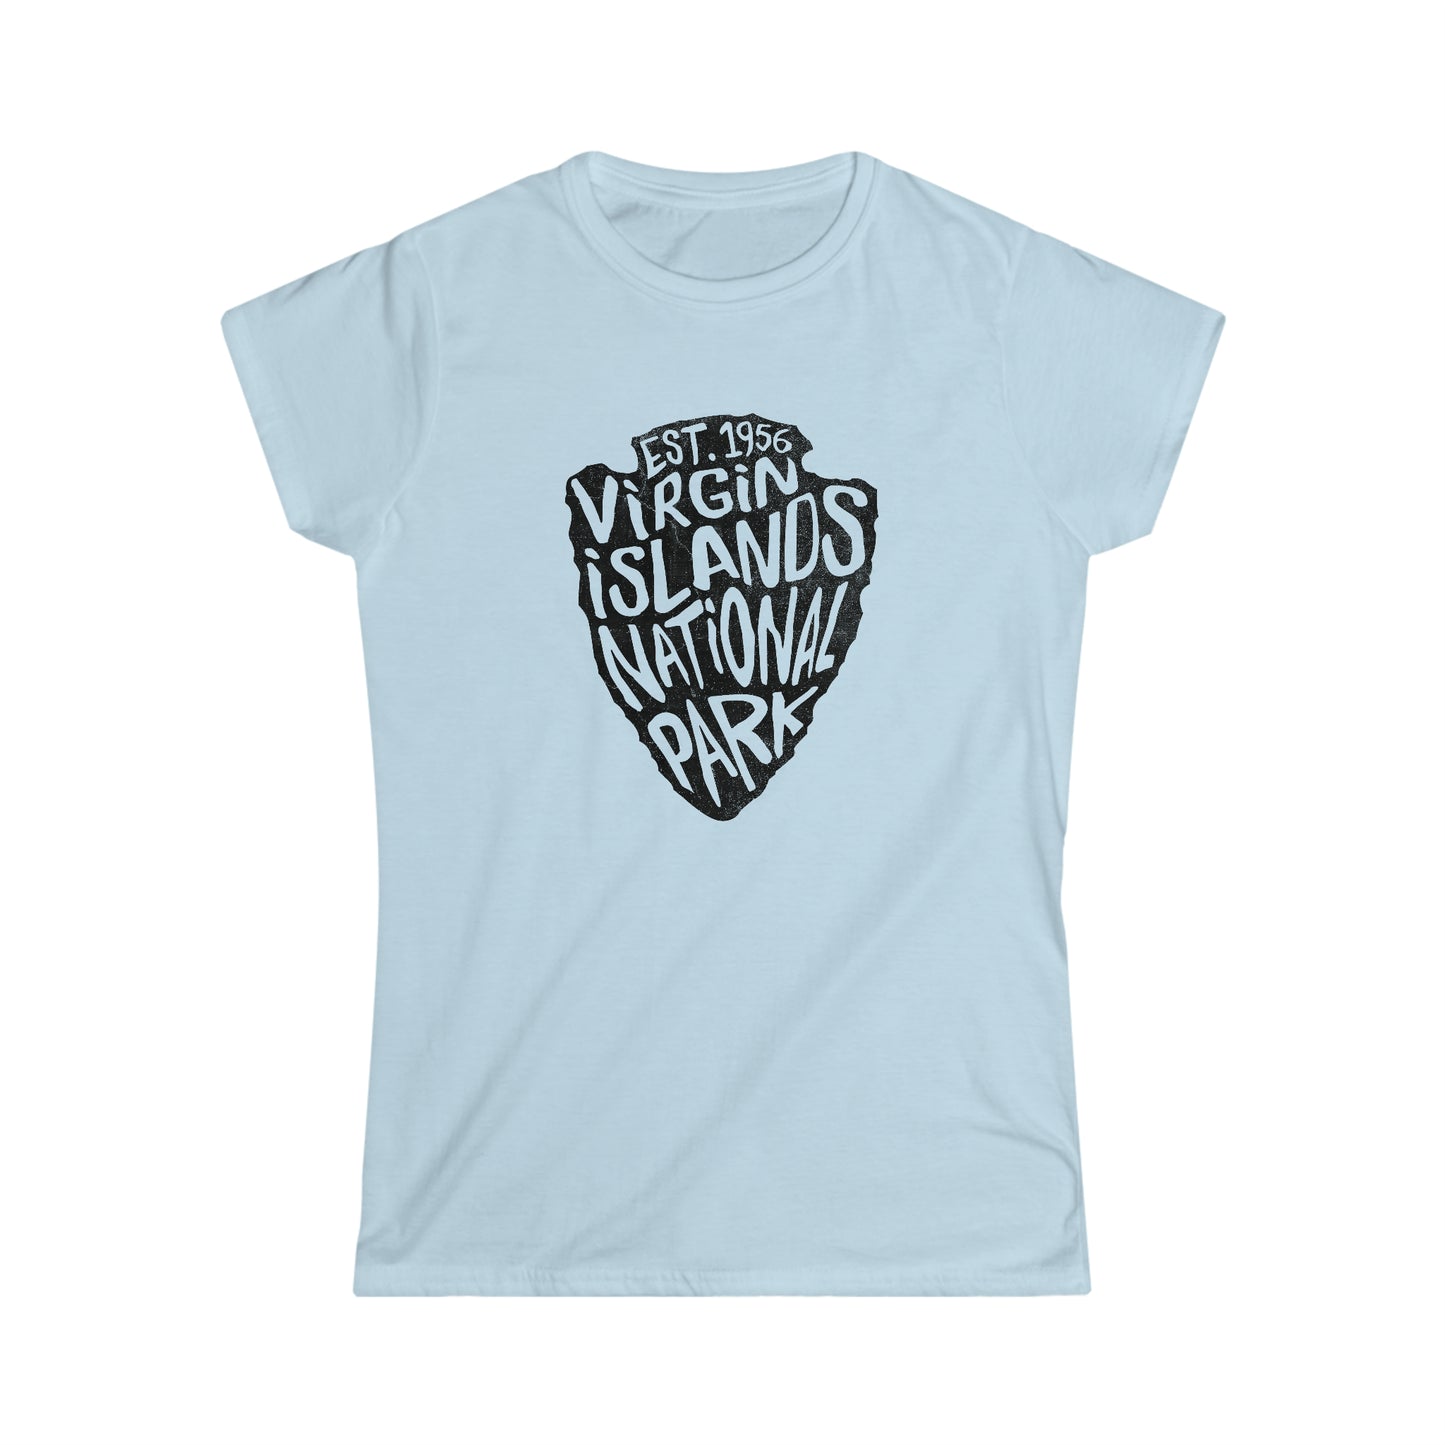 Virgin Islands National Park Women's T-Shirt - Arrowhead Design